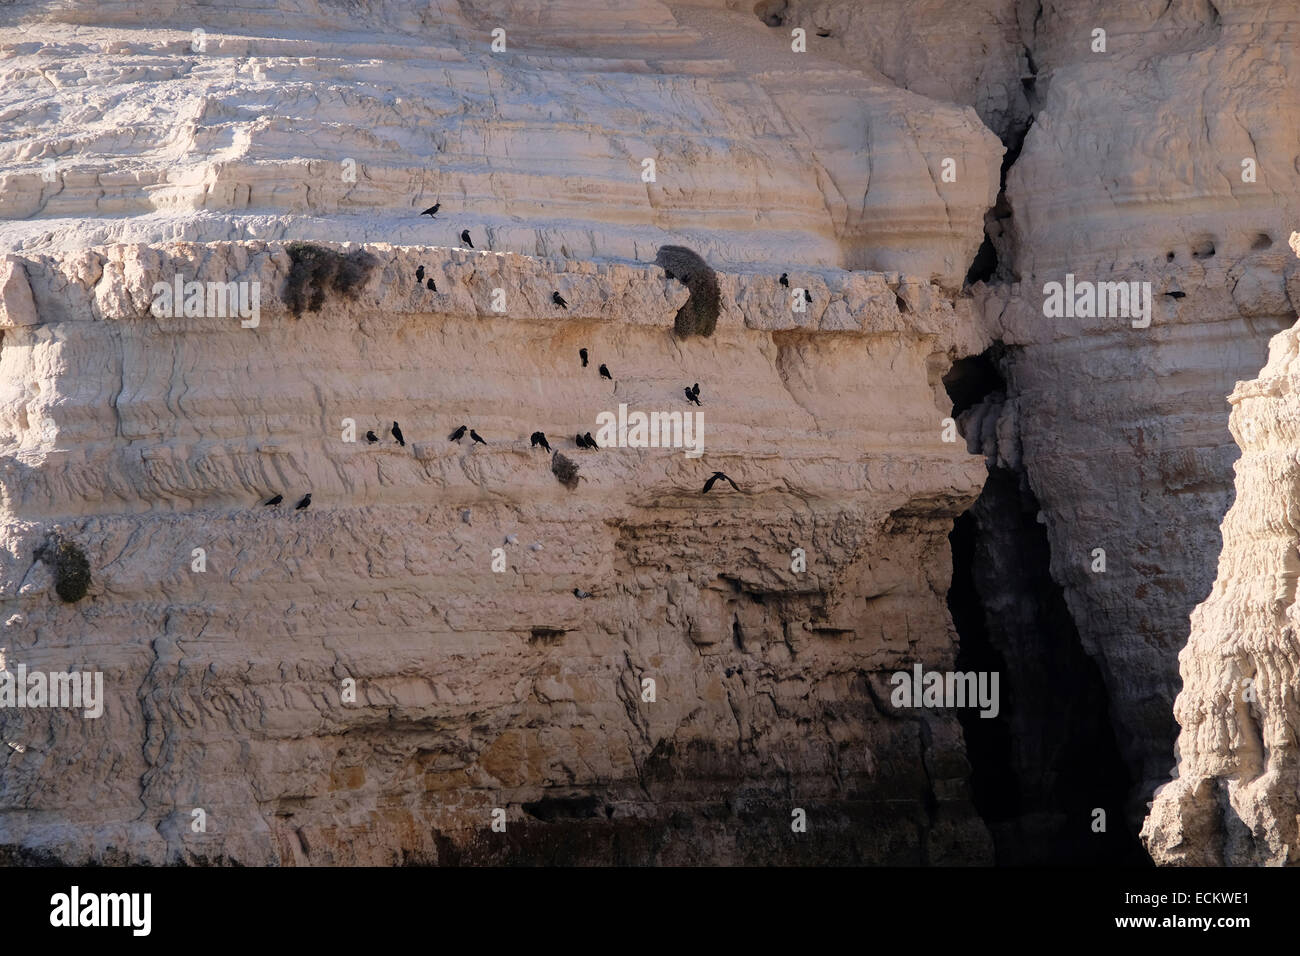 Vögel der Krähe Familie, ggf. Nebelkrähen, picken an kalkhaltigen Felsen.  Gedanken zur Fütterung auf Mineralsalze. Stockfoto